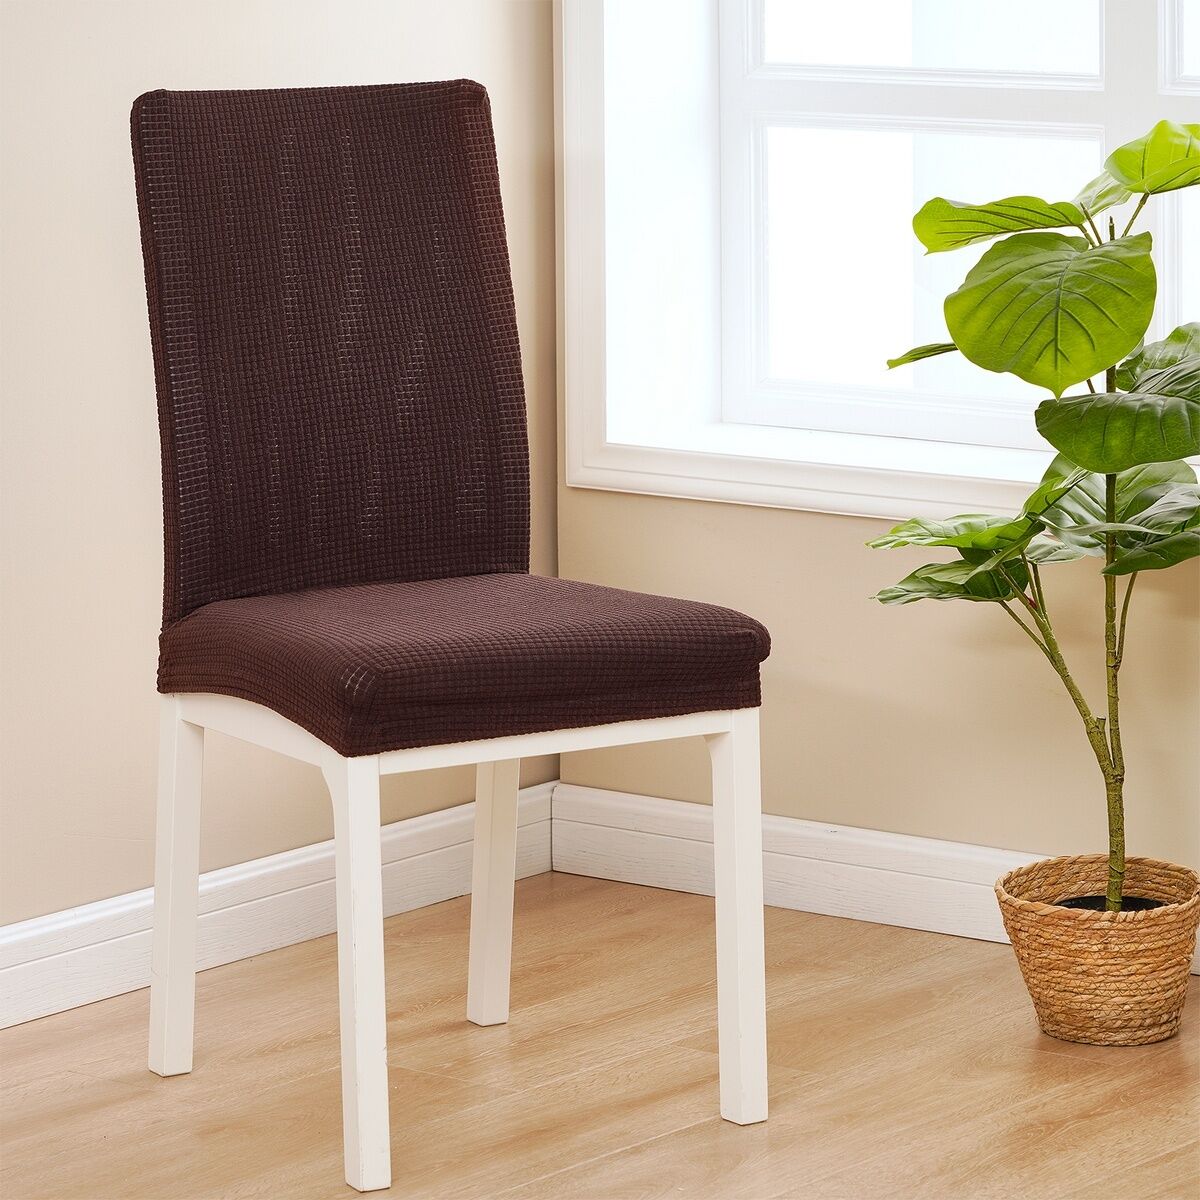 4Home Elastyczny wodoodporny pokrowiec na krzesłoMagic clean ciemnobrązowy, 45 - 50 cm, 2 szt.